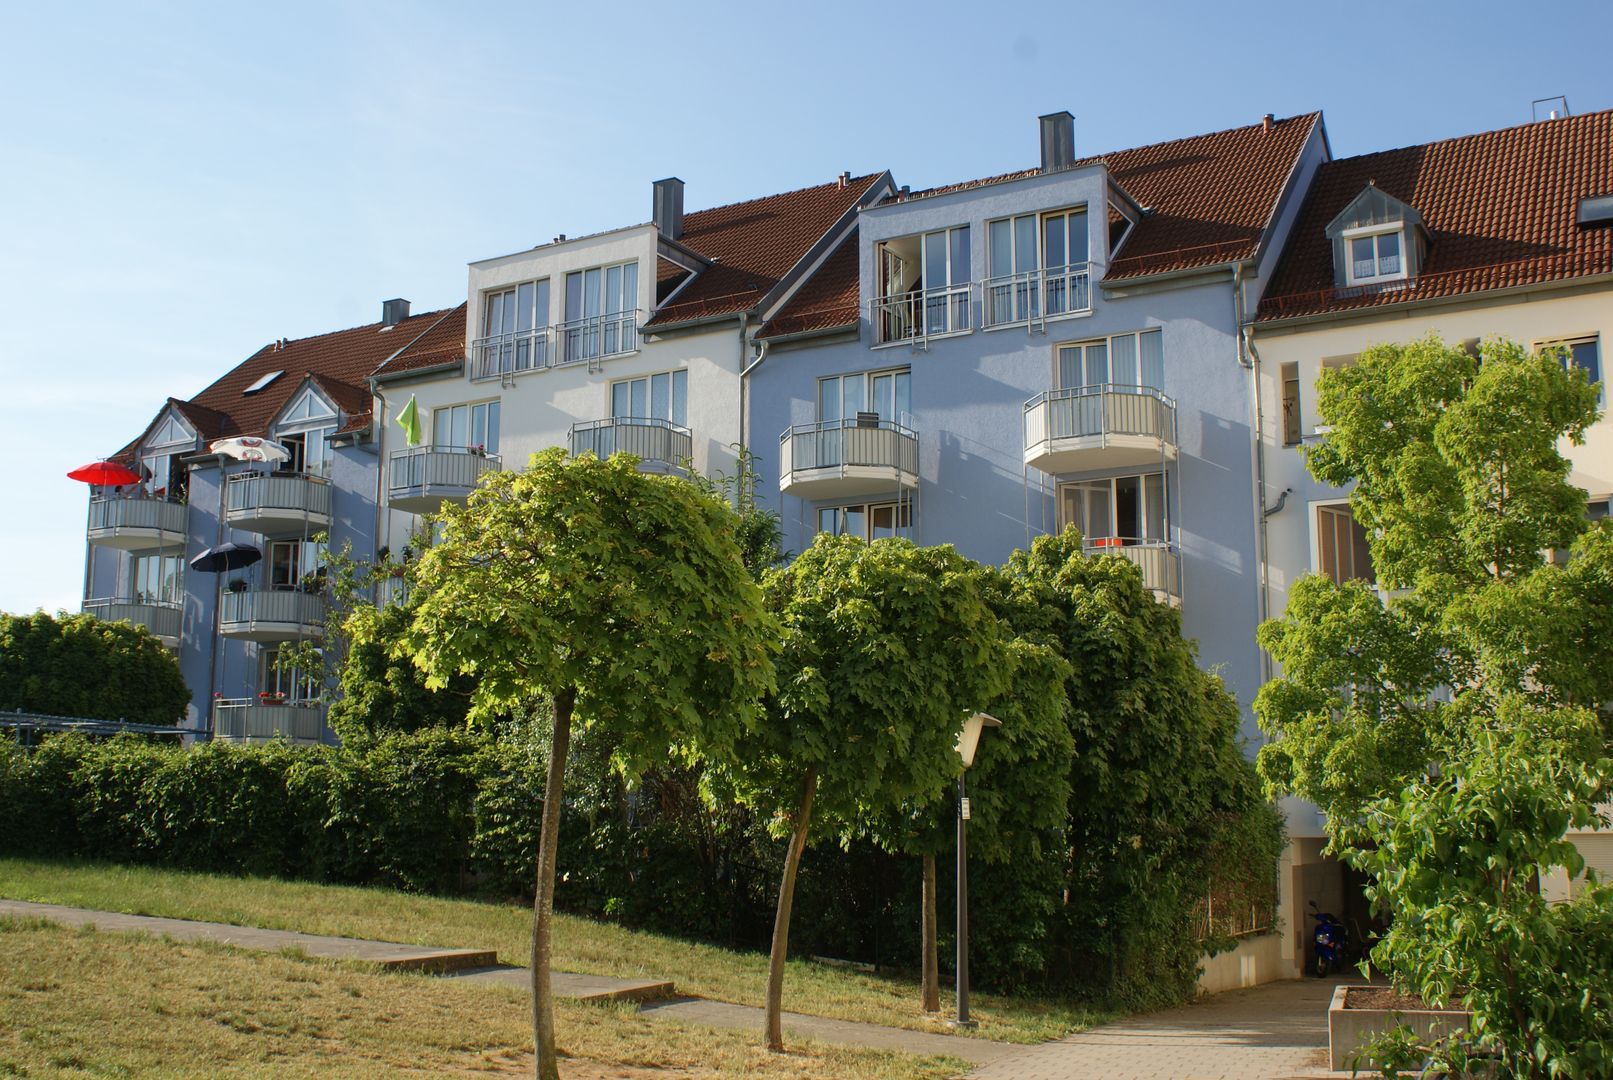 Fassadensanierung Regensburg , farben schiller farben schiller Case moderne